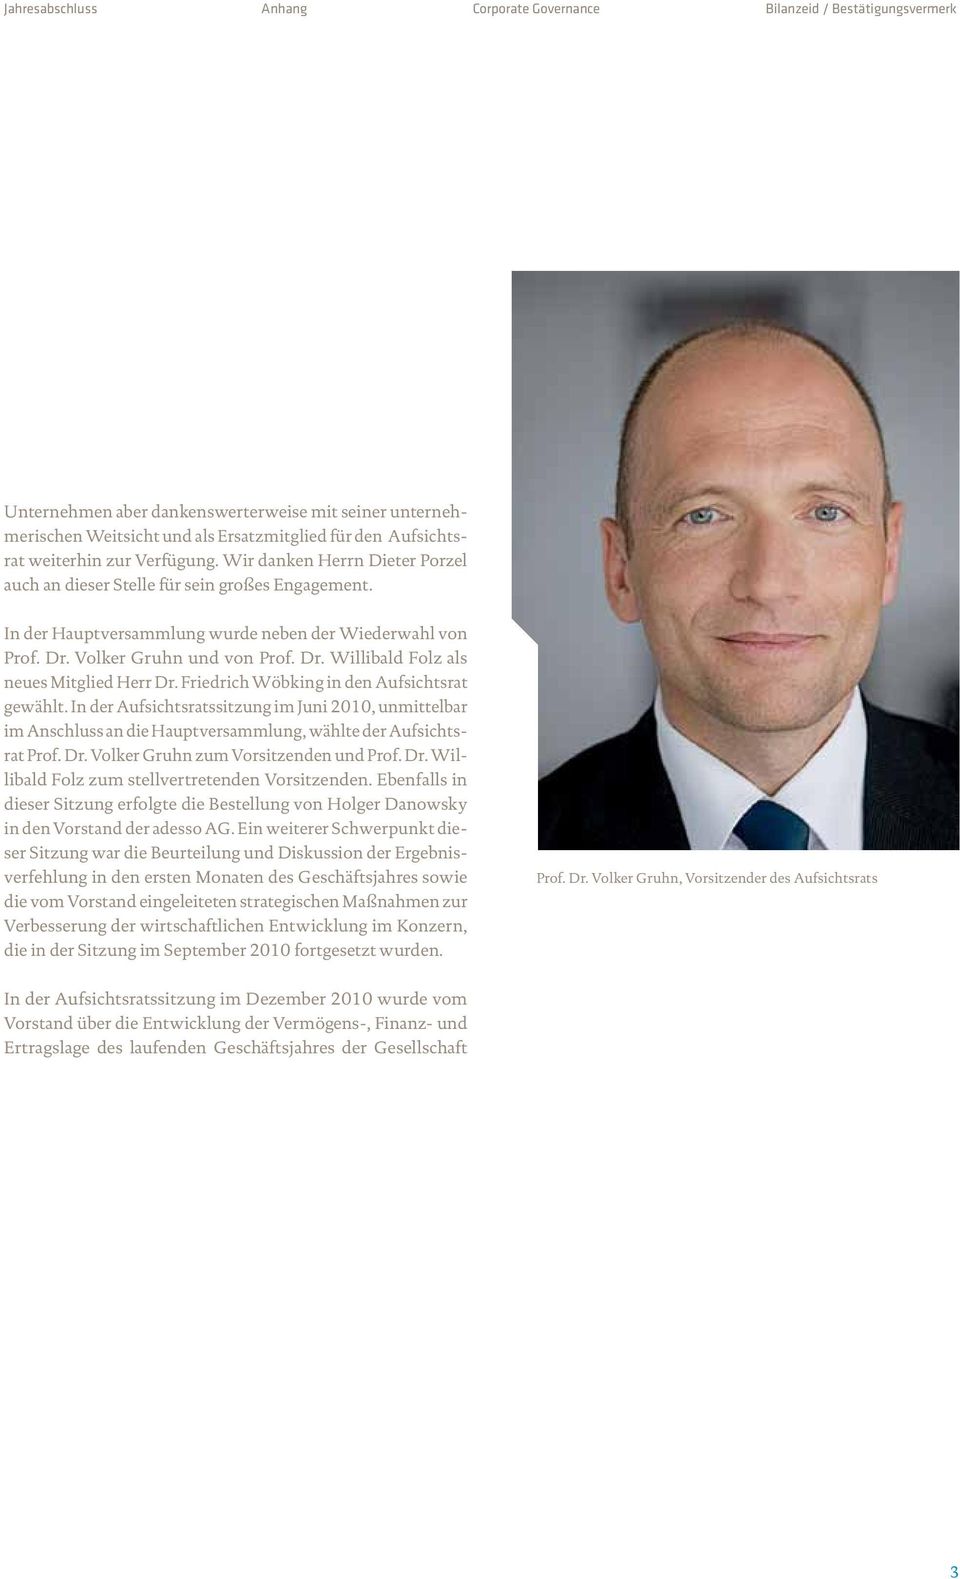 Dr. Willibald Folz als neues Mitglied Herr Dr. Friedrich Wöbking in den Aufsichtsrat gewählt.